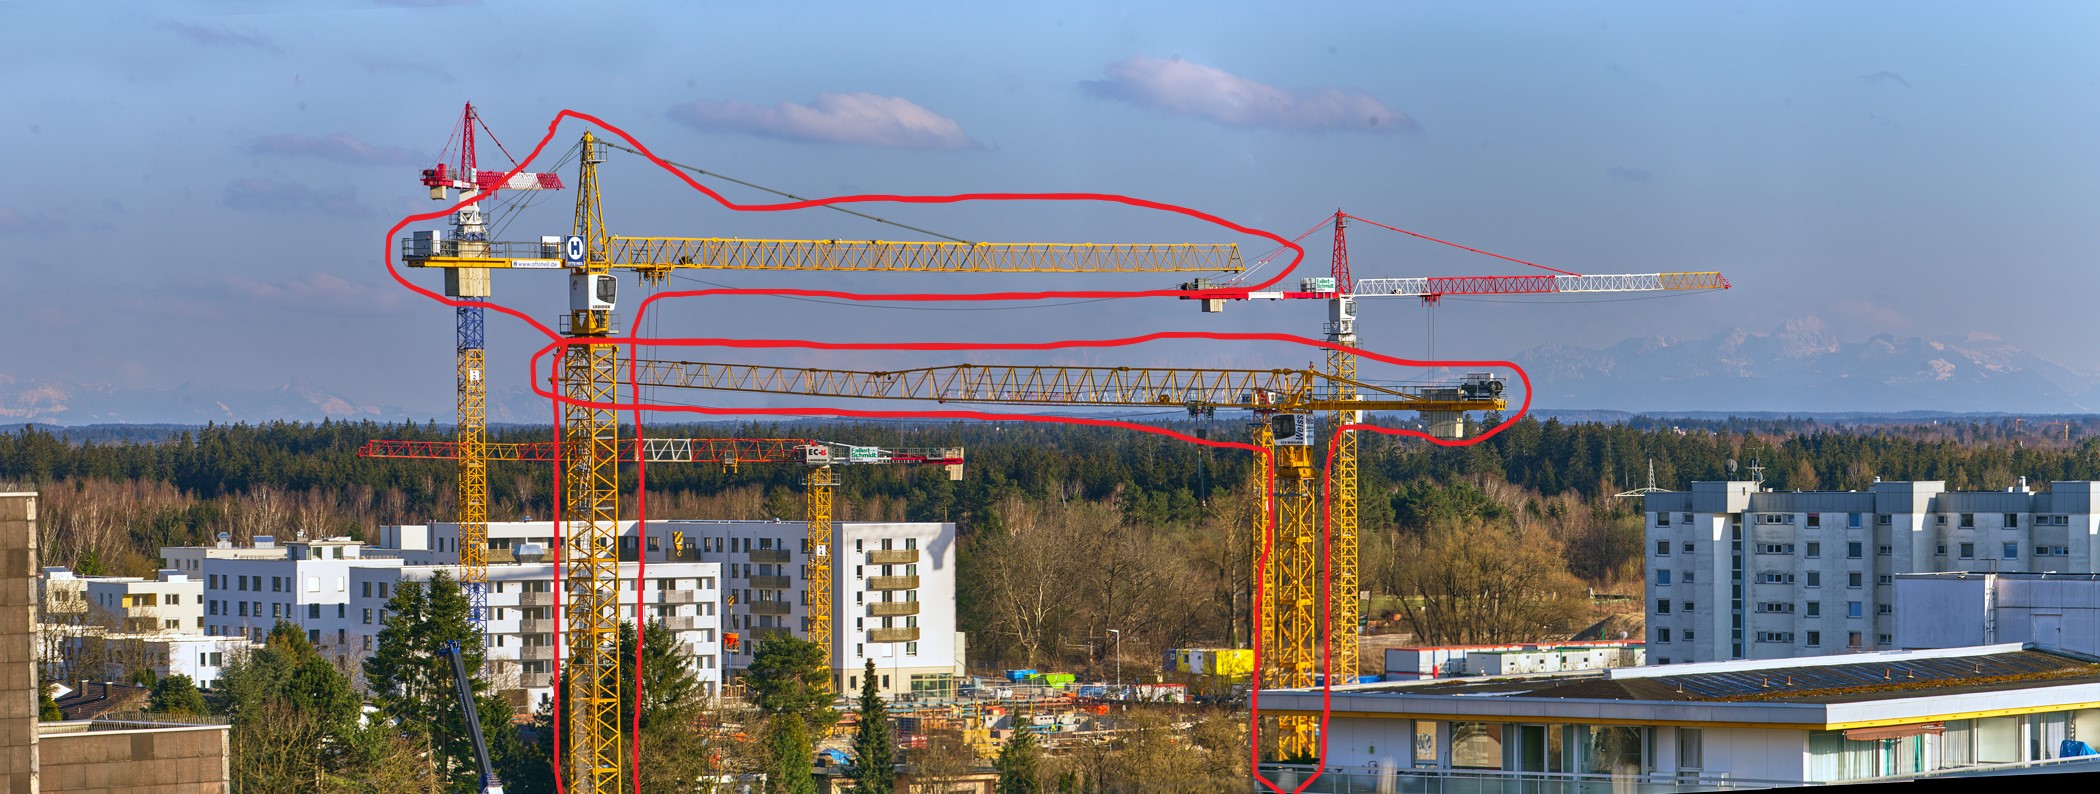 08.04.2021 - Nach dem 1. Kranaufbau an unserer Grundschule am Karl-Marx-Ring in Neuperlach ist der 2. Kran aufgestellt worden.